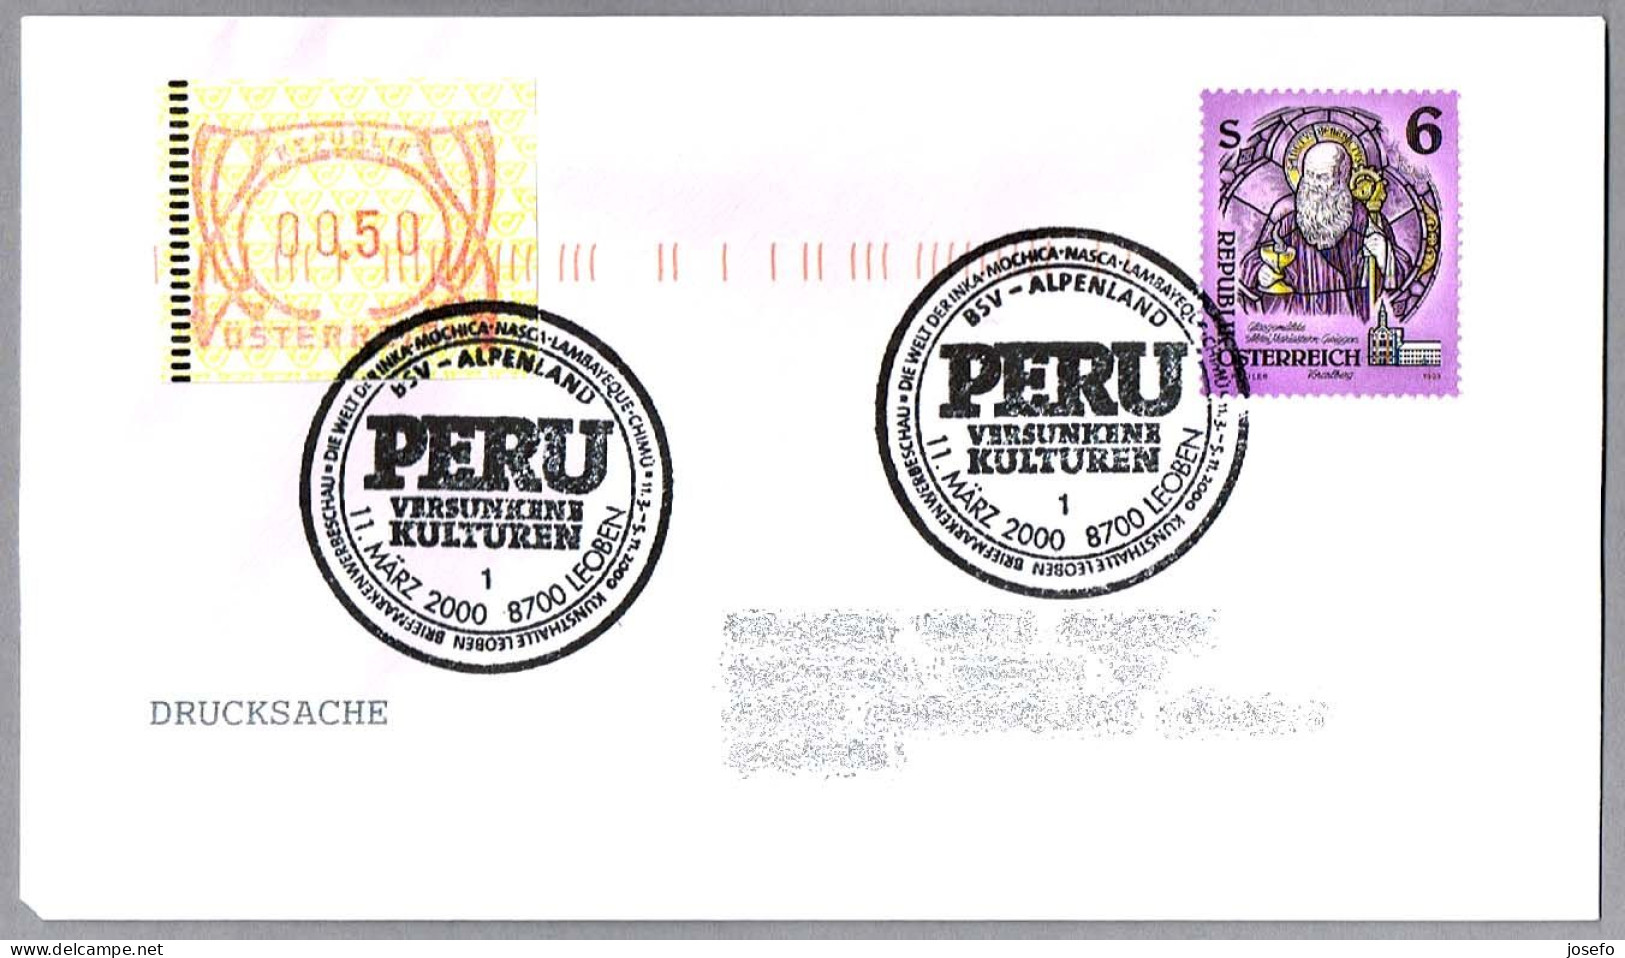 CULTURAS PERDIDAS DE PERU: INCAS, MOCHICA, NASCA, LAMBAYEQUE, CHIMU. Leoben 2000 - Indios Americanas